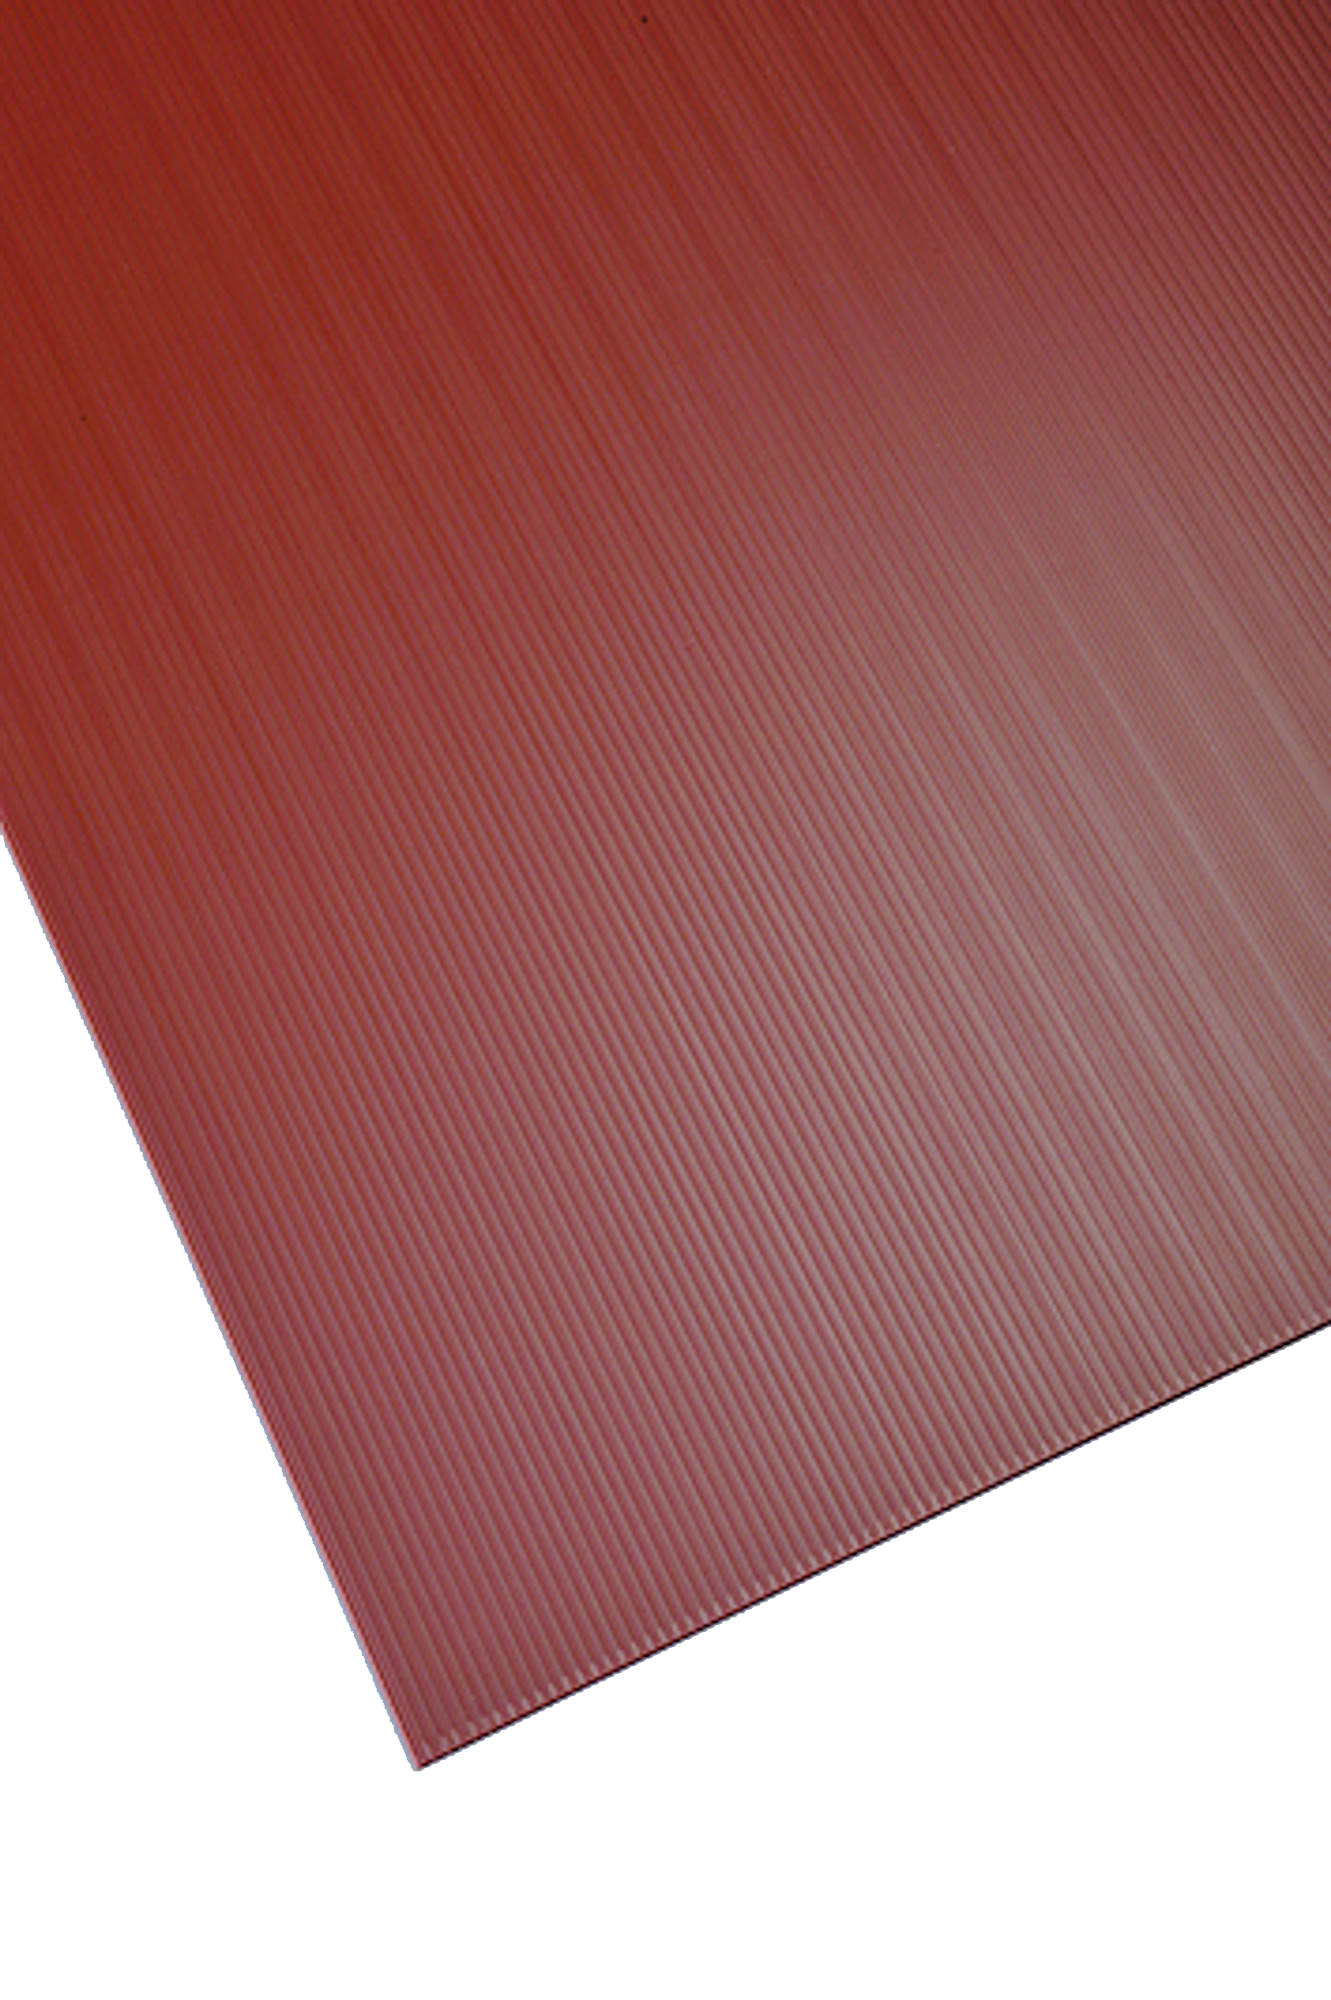 Placa de plástico marrón opaco de 2.5 mm de grosor y 150x50cm